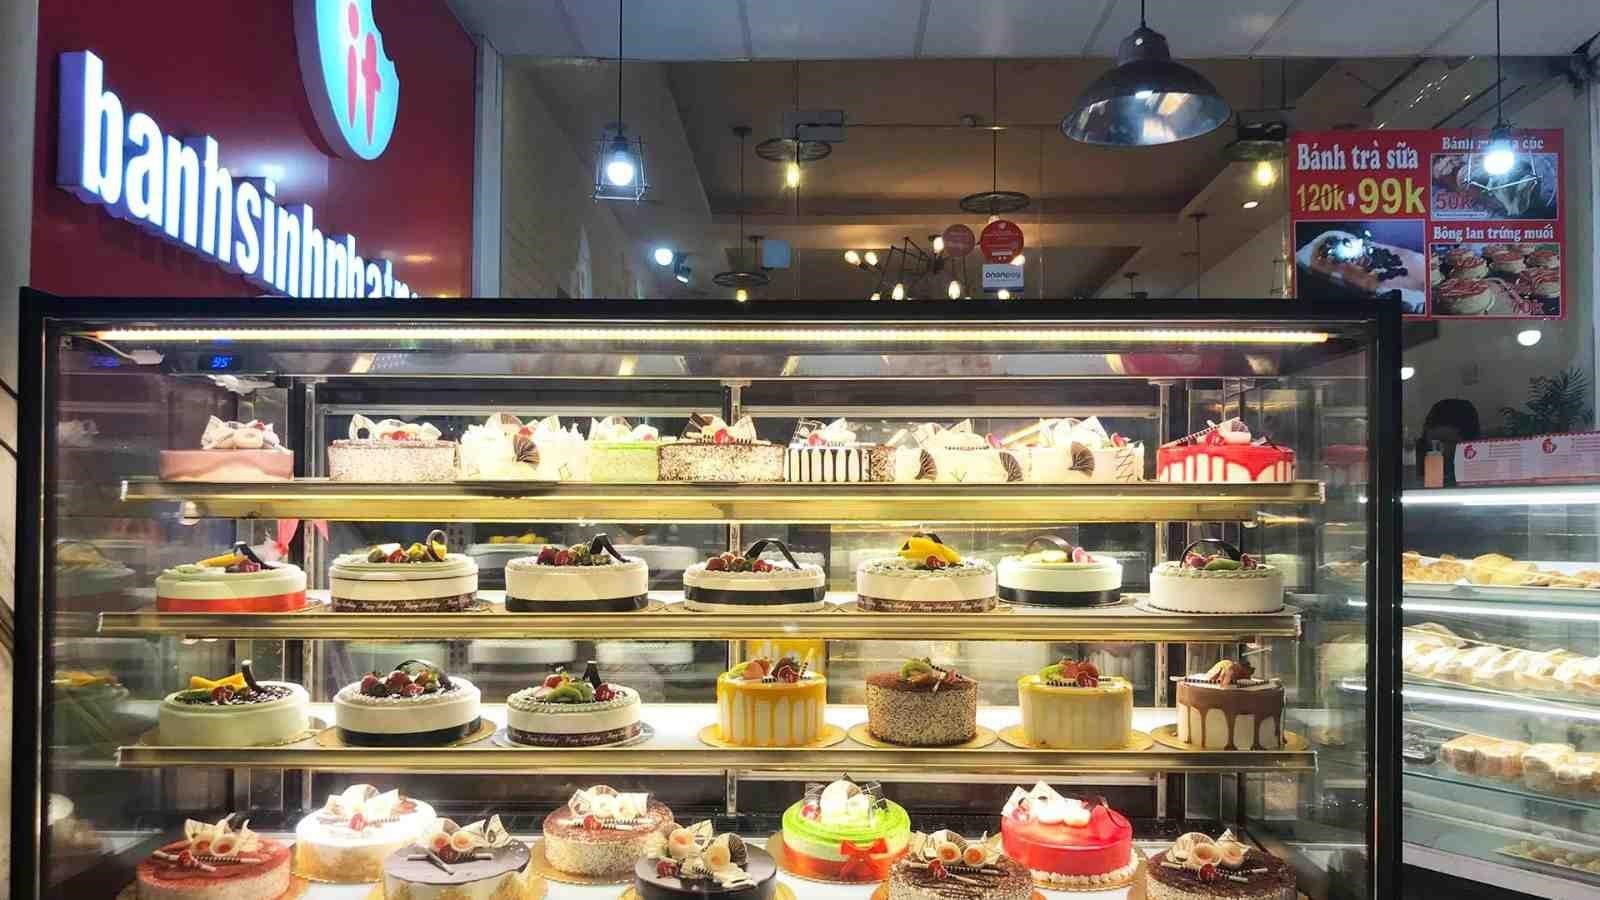 Top 5 cửa hàng bánh ngọt tại Vinhomes Ocean Park 1 mà hội mê đồ ngọt cần biết